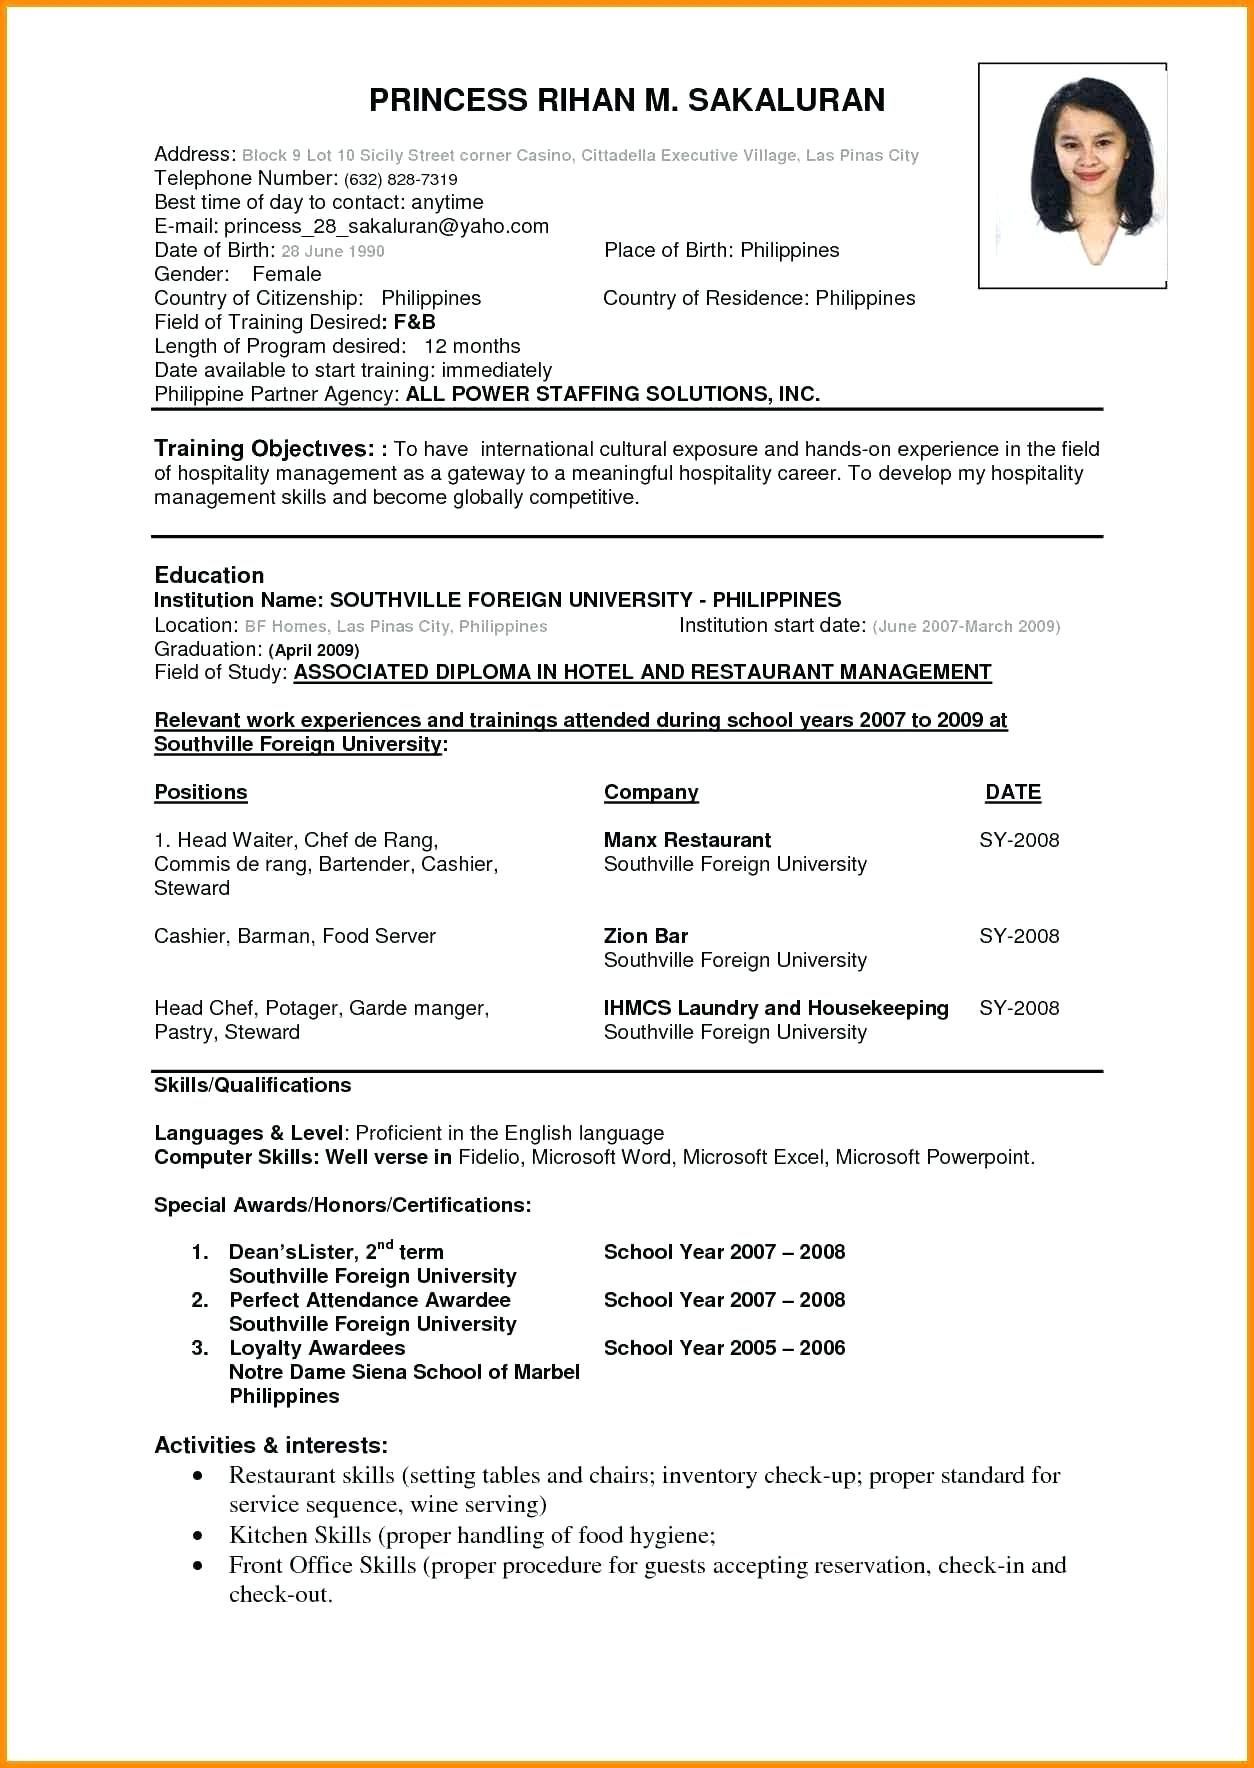 Sample Resume for Bsc Nursing Fresher Pdf 16lancarrezekiq Resume format for Freshers In Nursing